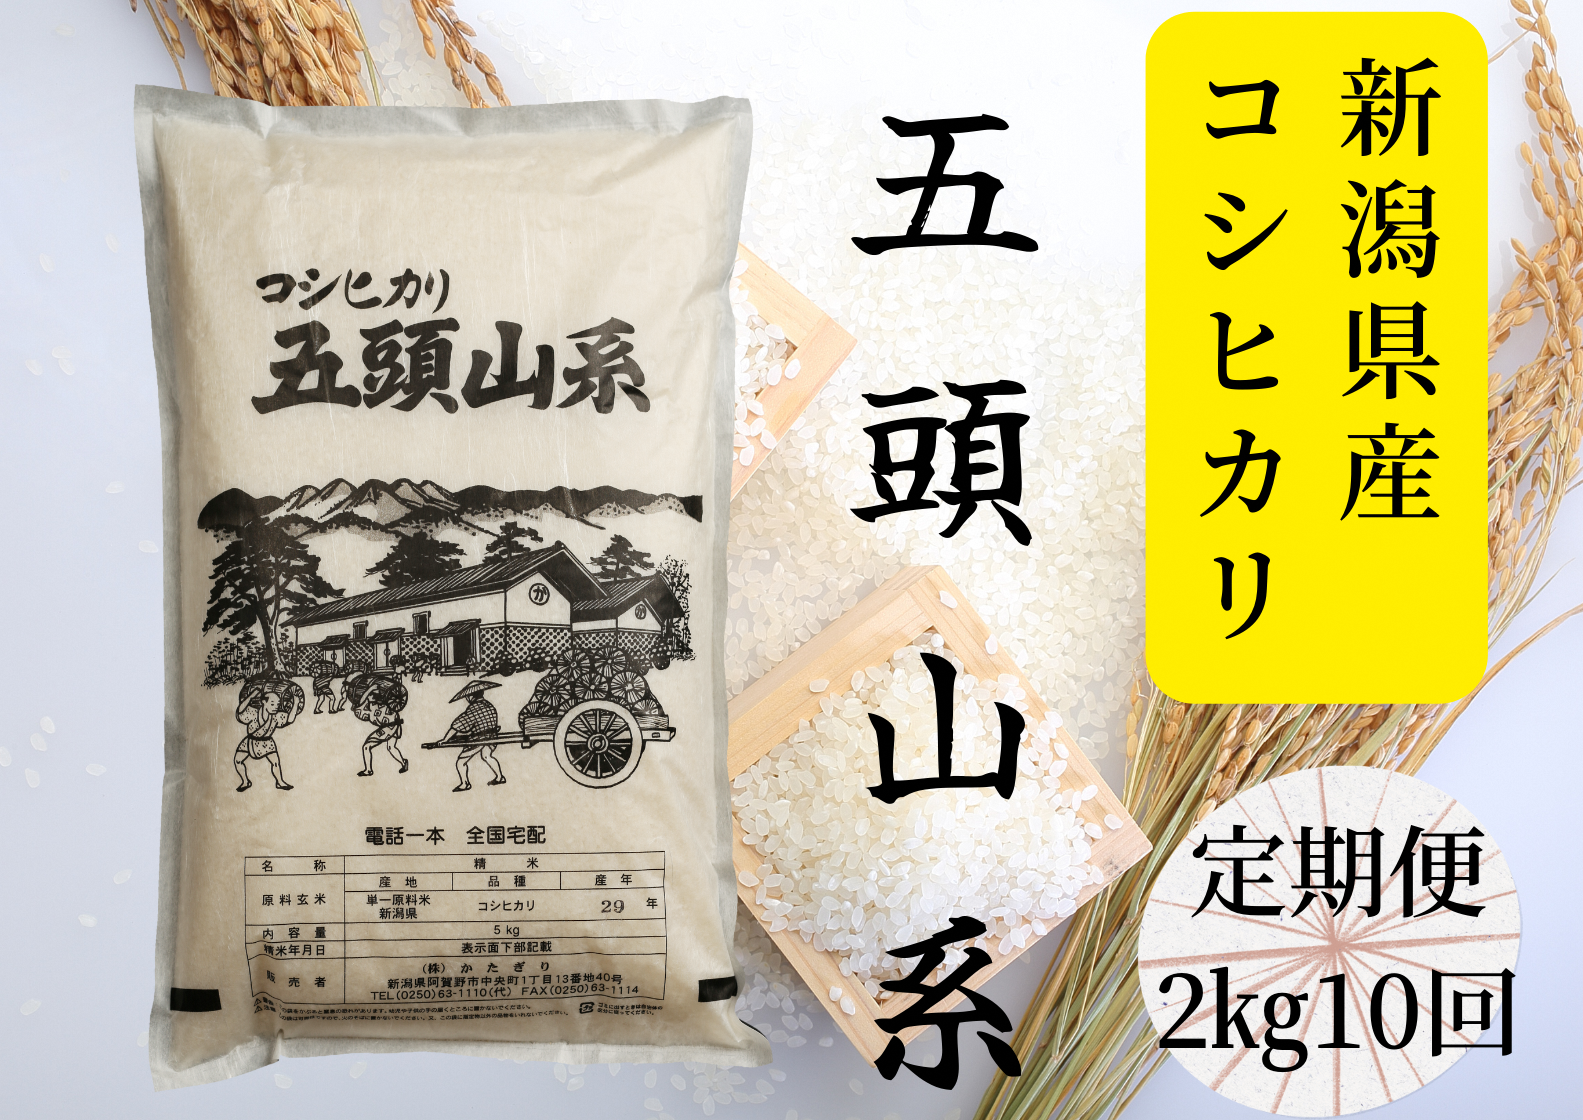 【10回定期便】「米屋のこだわり阿賀野市産」コシヒカリ2kg×10回 1E20046